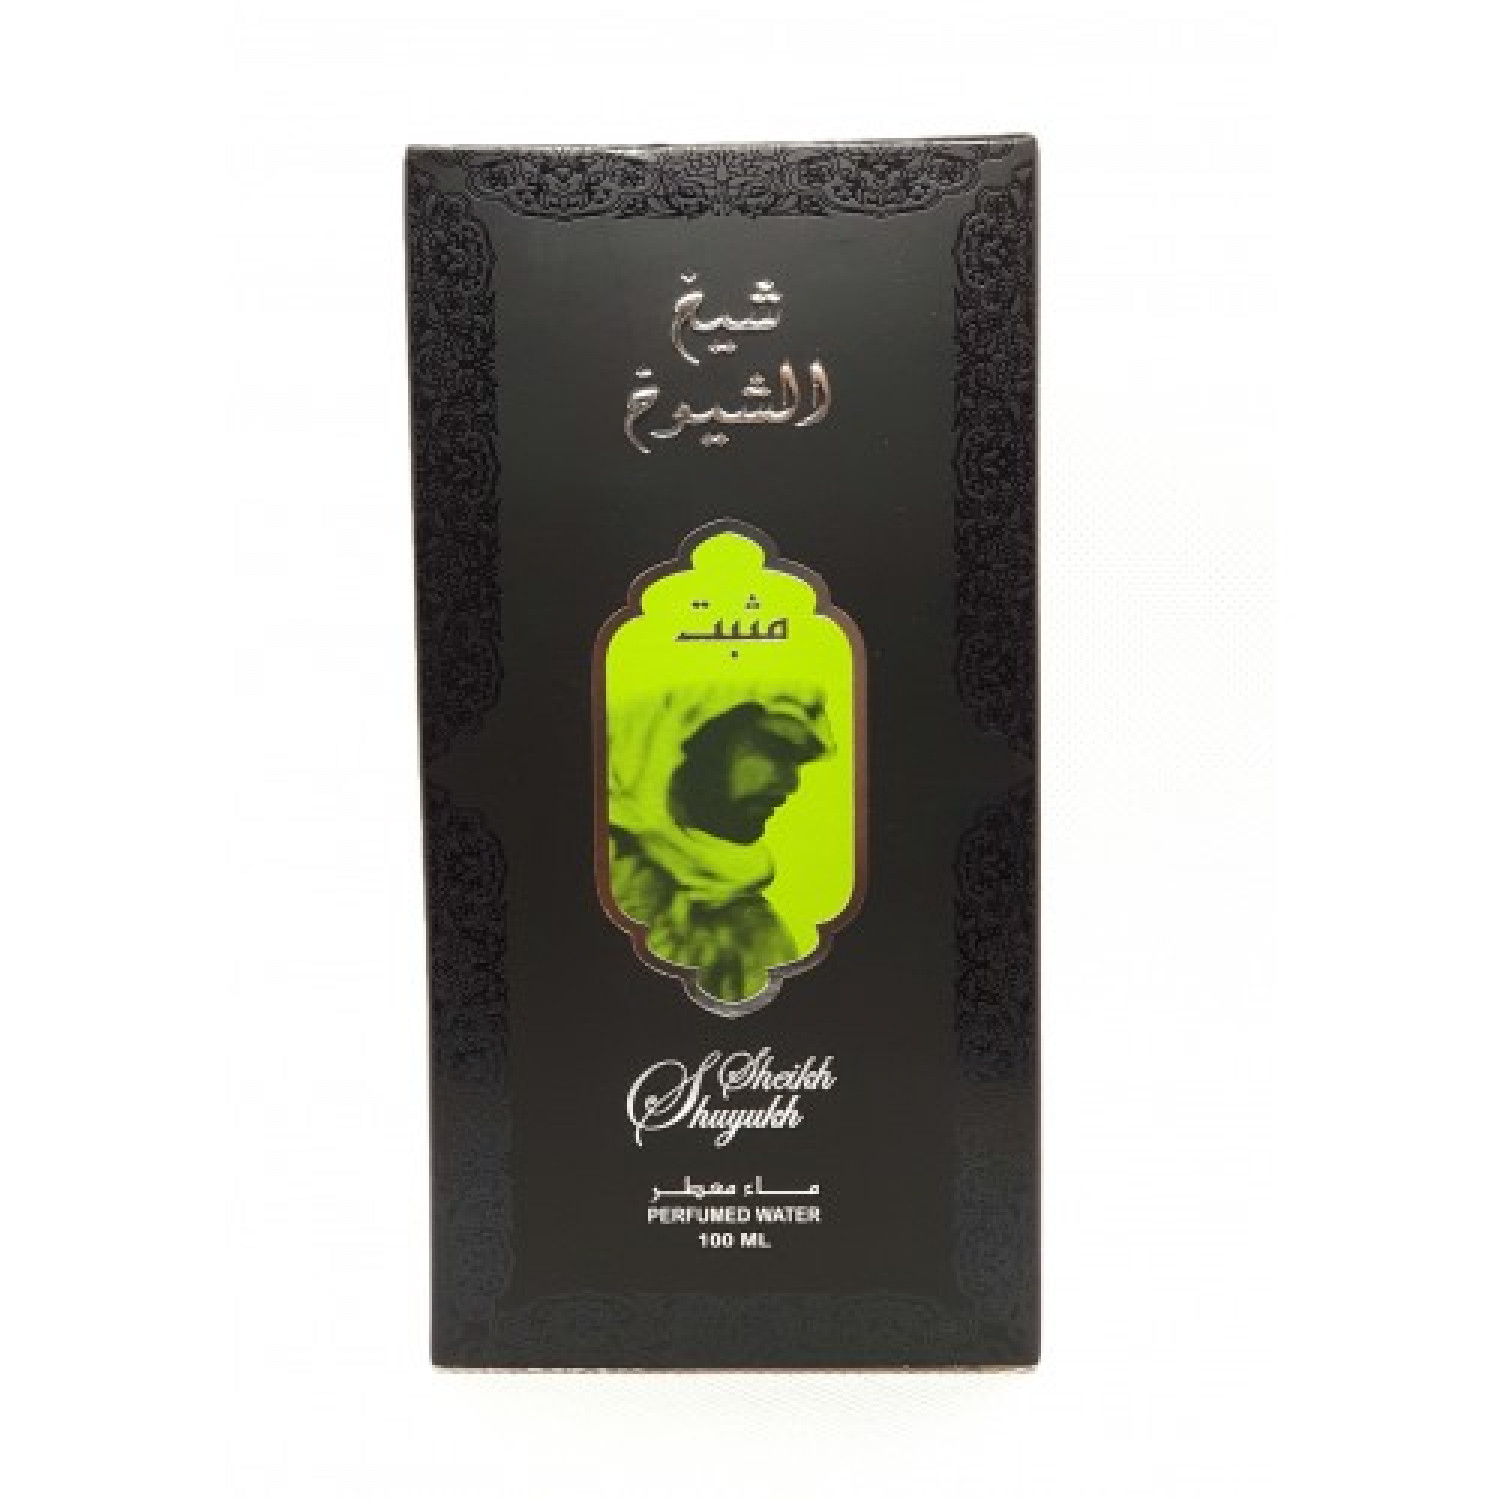 Аль шейх таблетки. Шейх Shuyukh. Шейх Шуюх духи. Shiekh al Shuyukh 200 ml. Lattafa Perfumes Sheikh al Shuyukh.